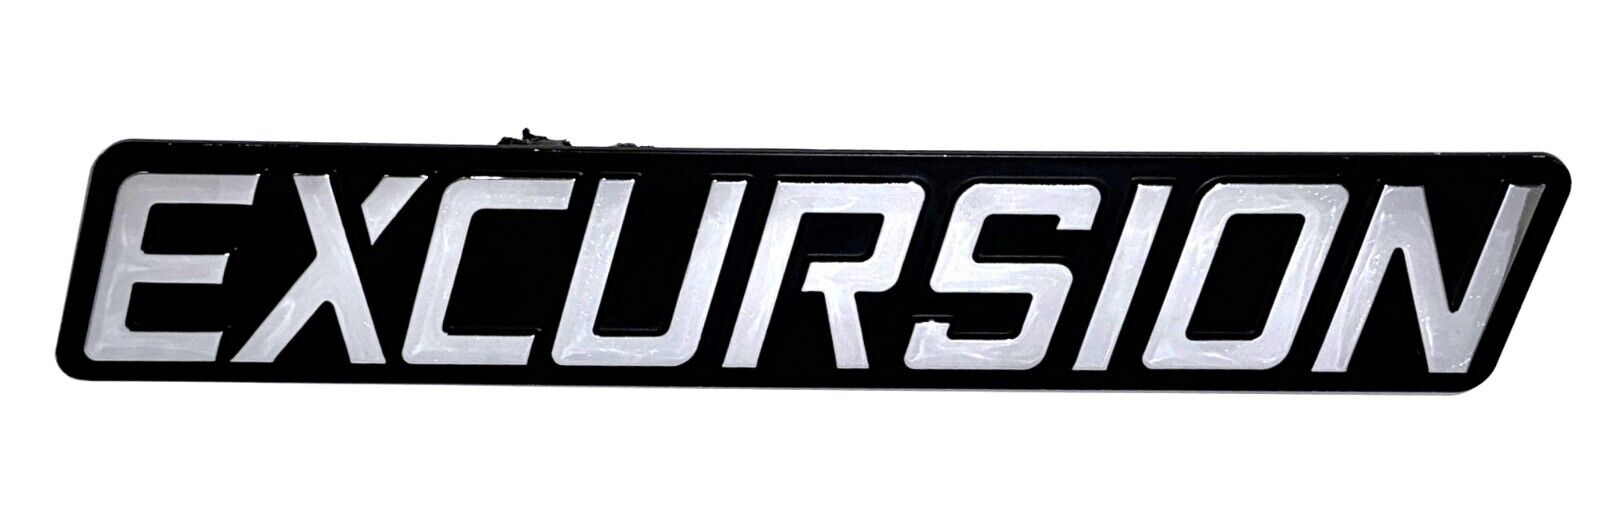 00-05 Ford Excursion—Left Driver Front Fender Nameplate Emblem